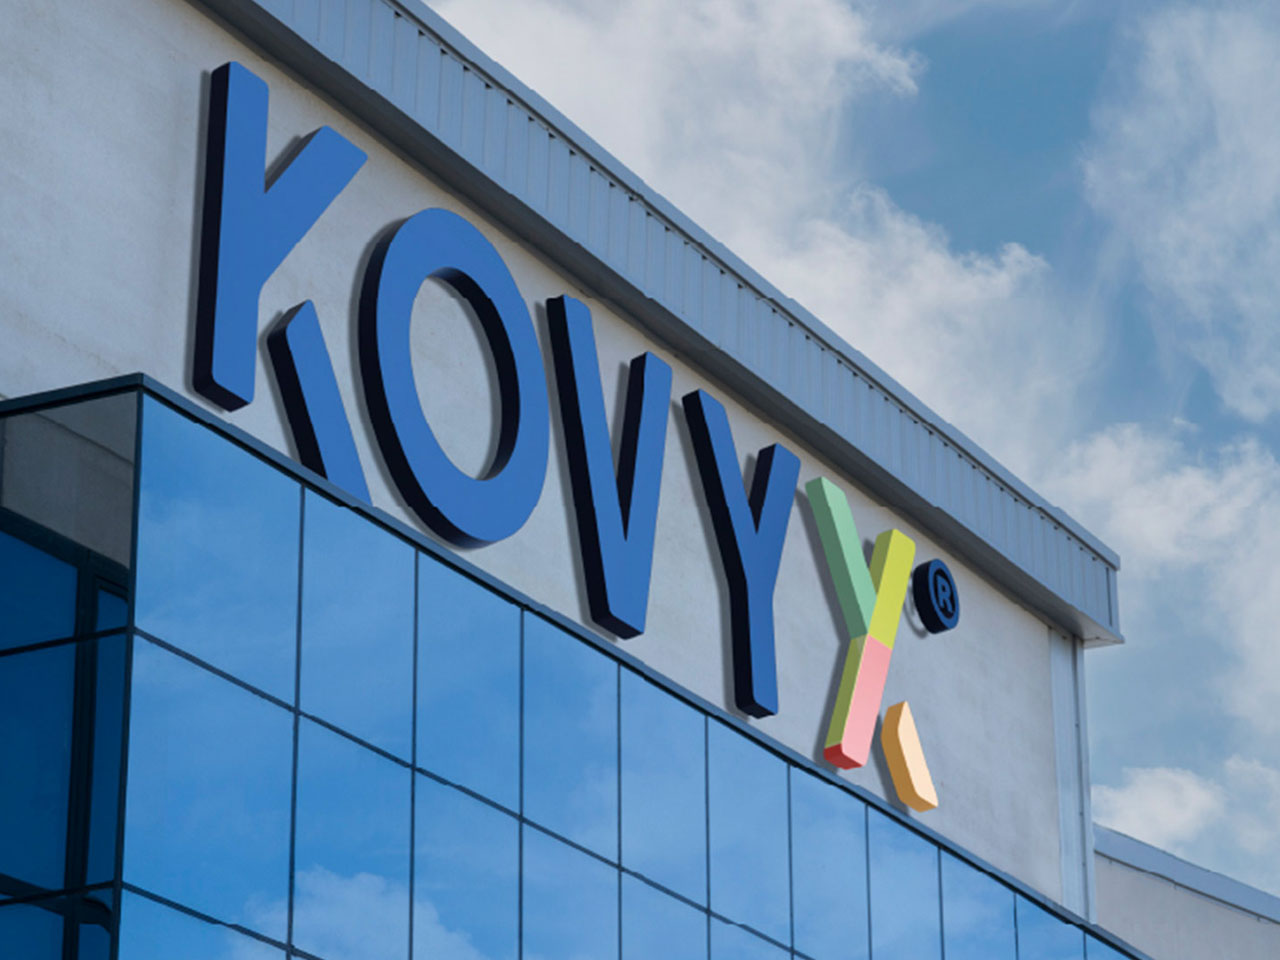 Escritórios Kovyx